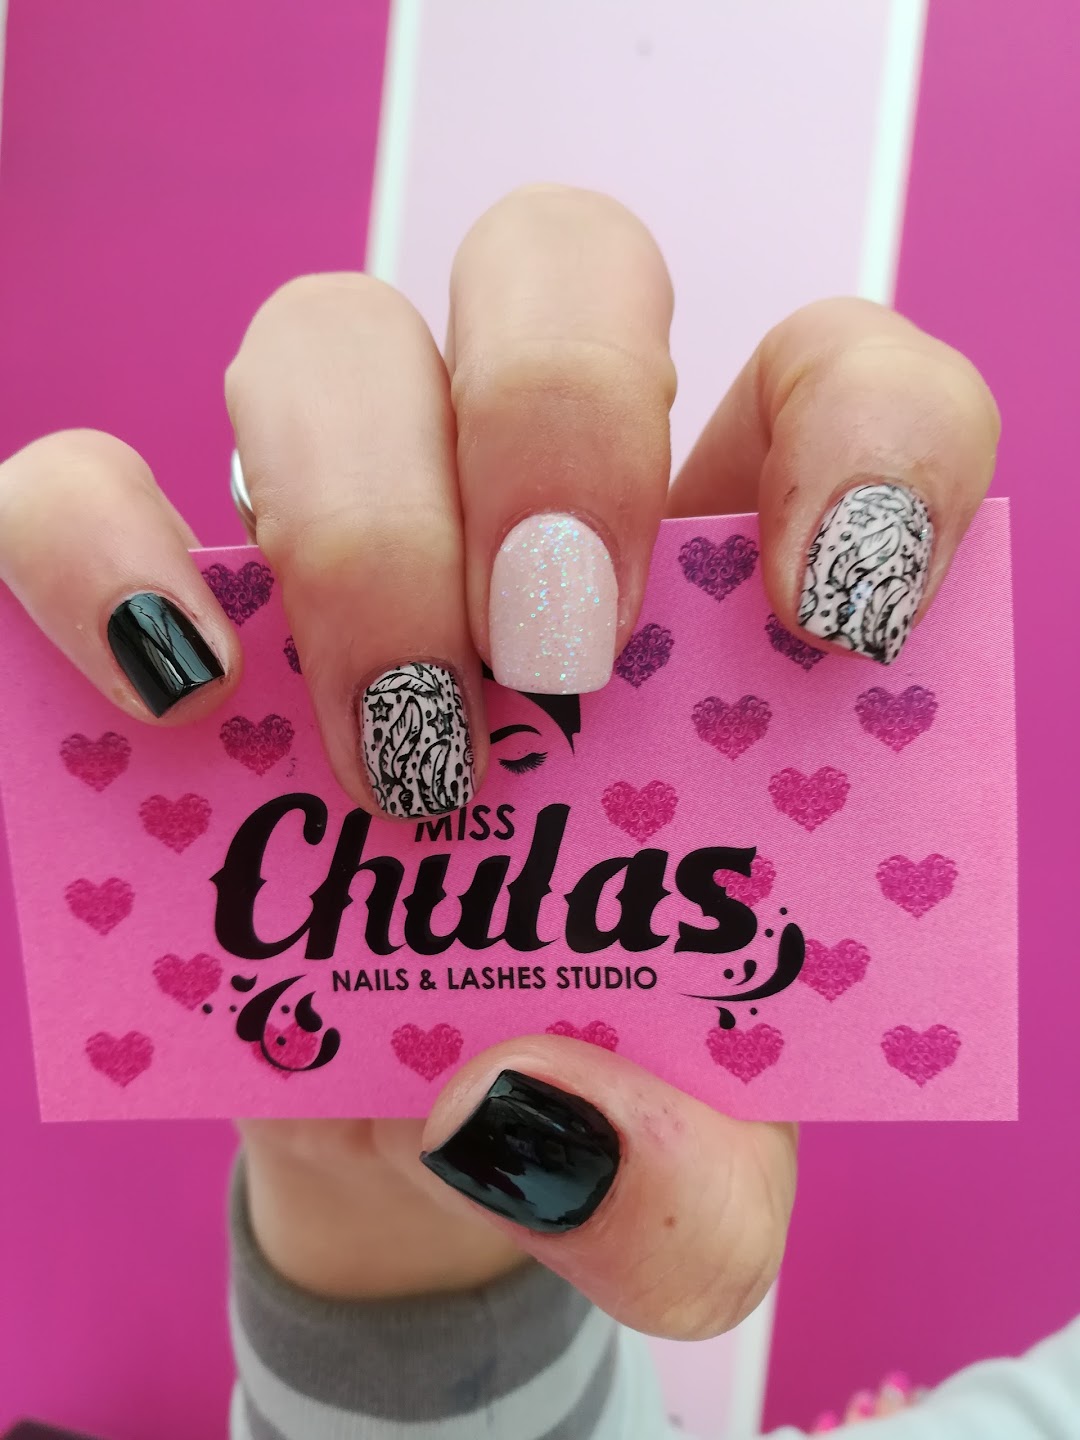 Miss Chulas Nails & Lashes